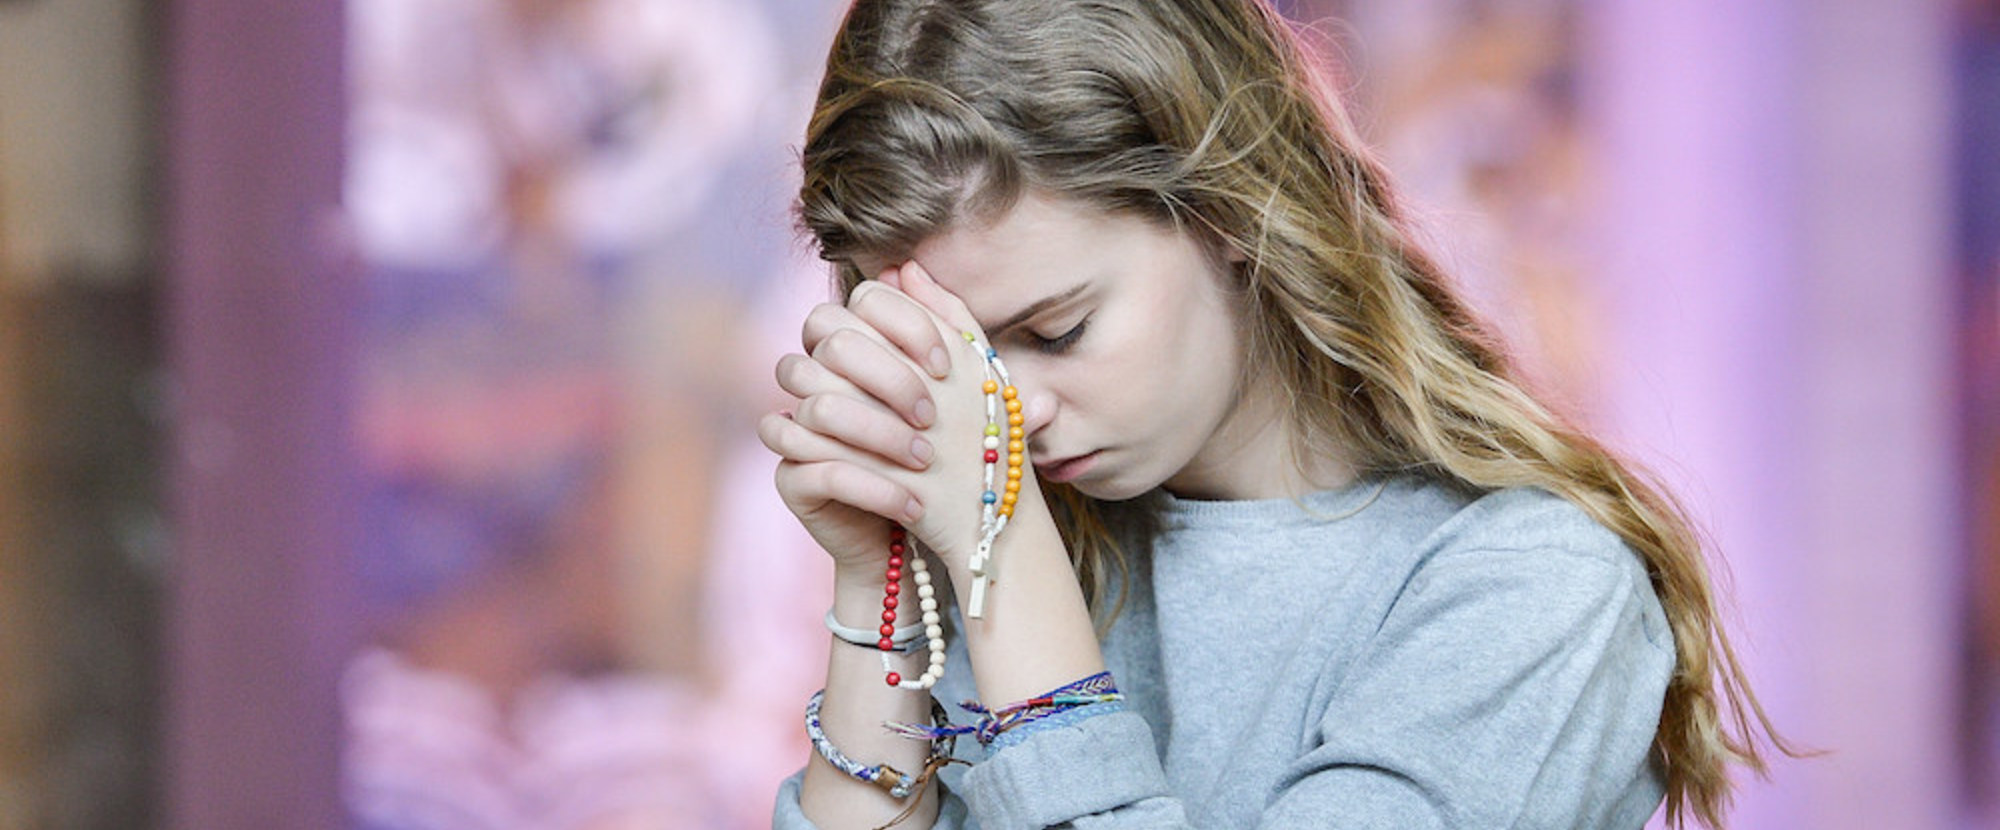 Eine junge, blonde Frau betet, ihren Kopf auf ihre gefalteten Hände gelegt, kniend in einer Kirchenbank am 27. Februar 2018. Ihre Augen sind geschlossen, in der Hand hält sie einen Rosenkranz, sie trägt bunte Armbänder aus Stoff. (Aufnahmeort unbekan